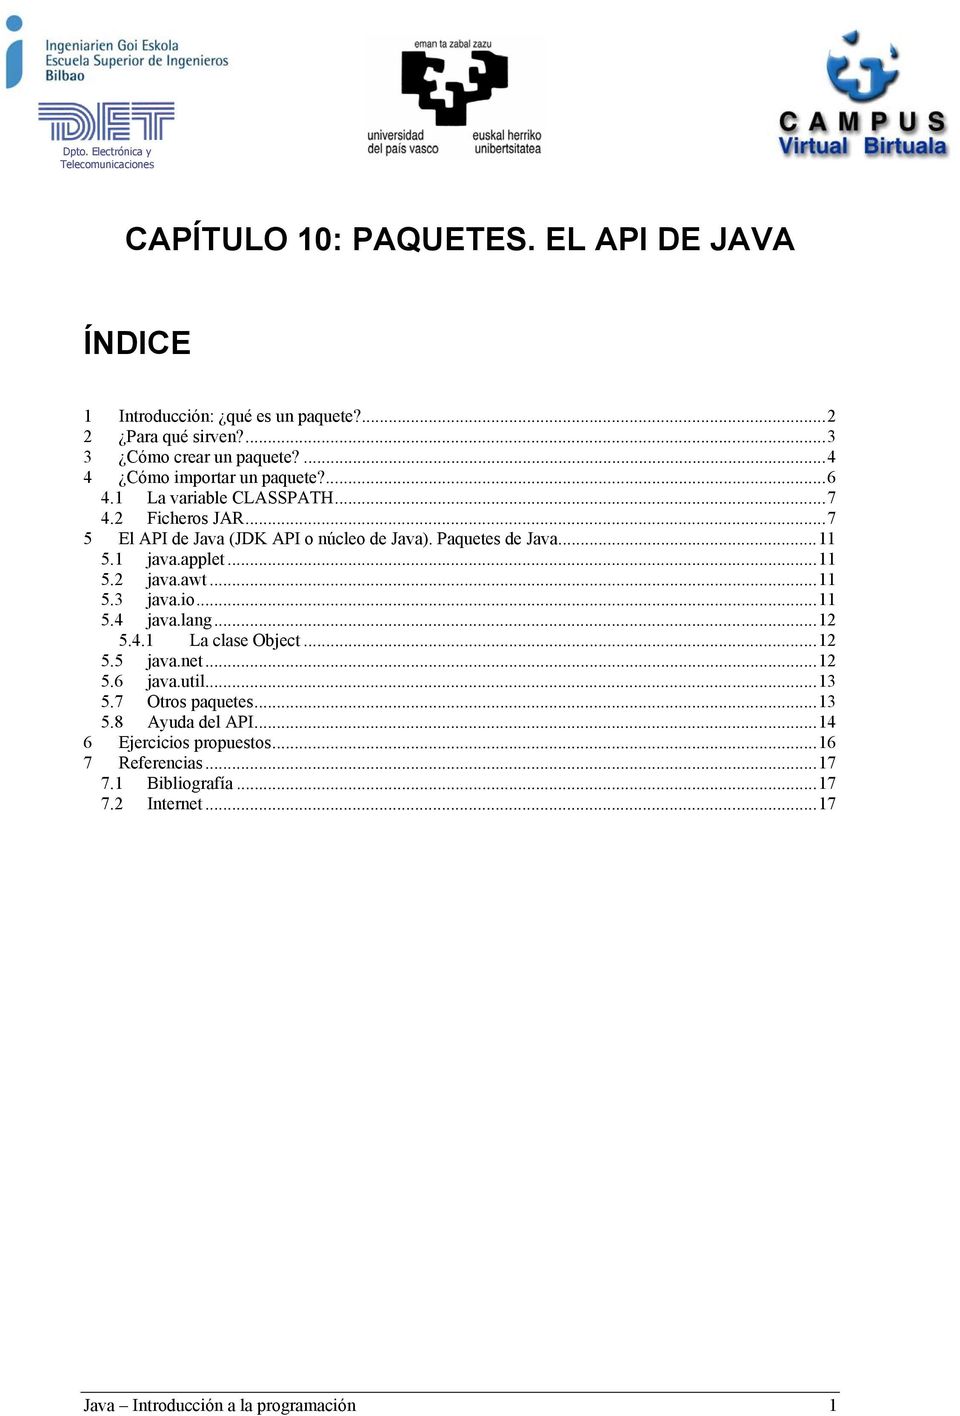 Paquetes de Java...11 5.1 java.applet...11 5.2 java.awt...11 5.3 java.io...11 5.4 java.lang...12 5.4.1 La clase Object...12 5.5 java.net...12 5.6 java.util.